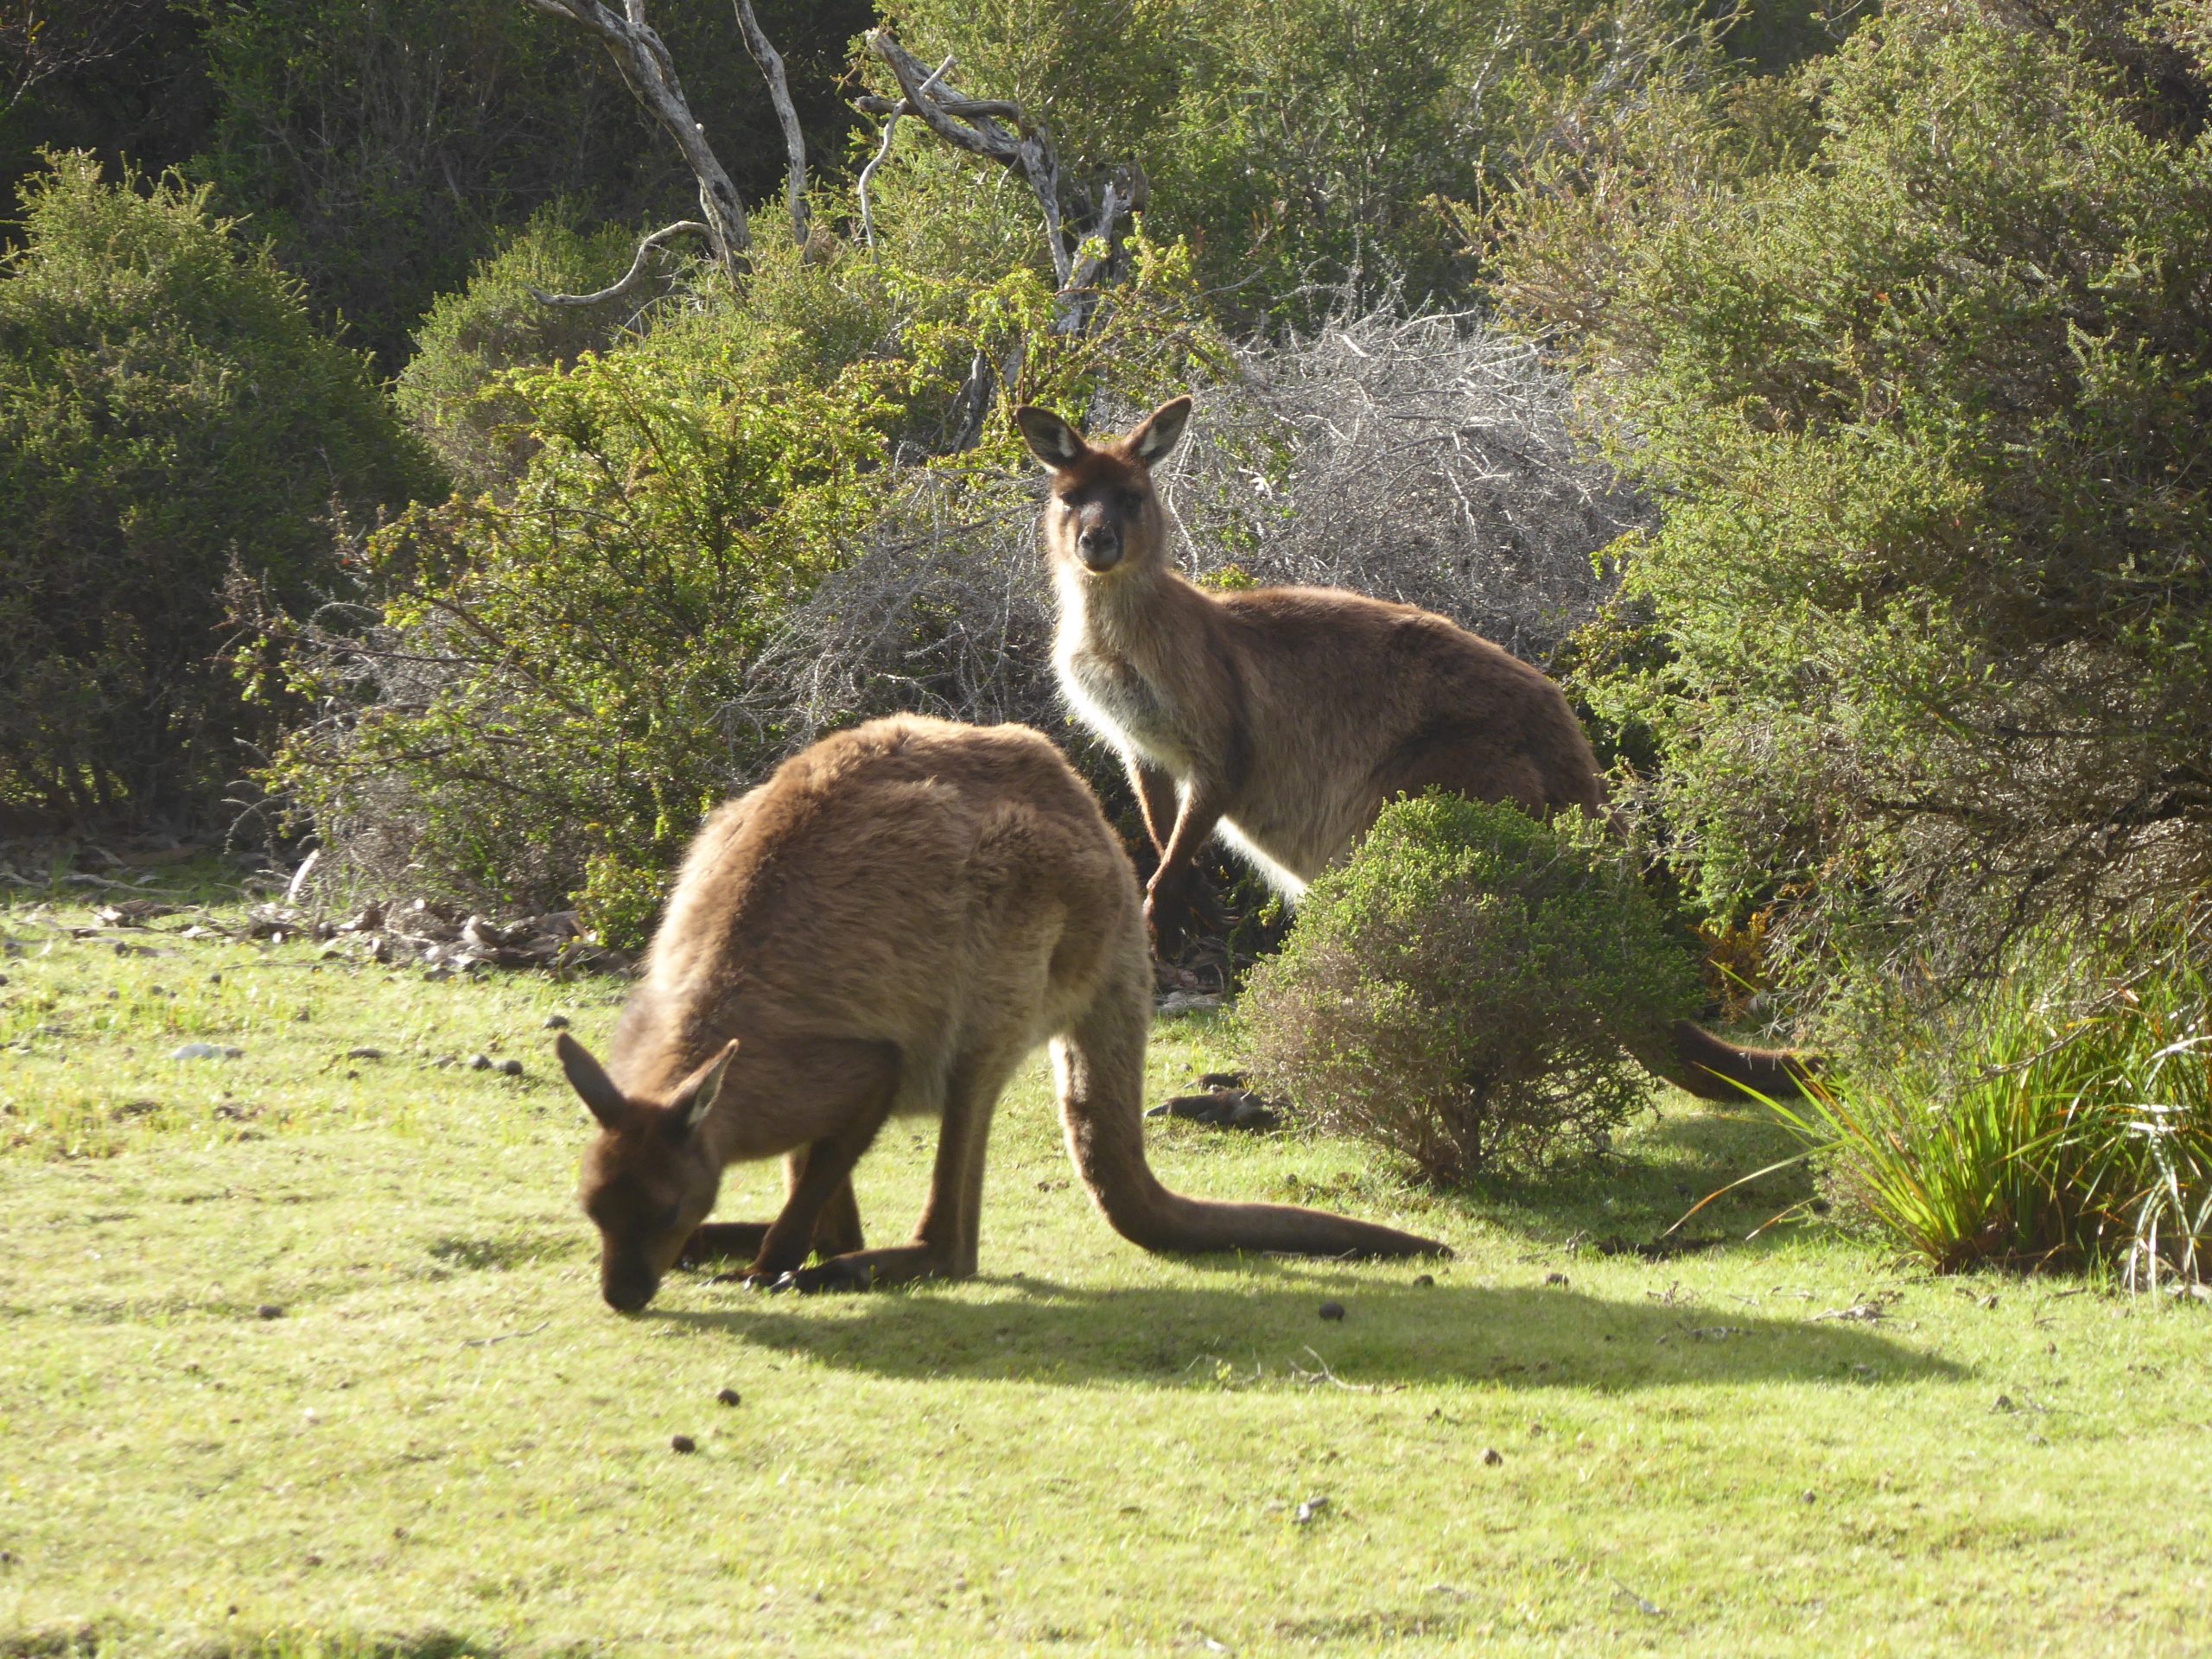 Radreise Australien 2016 - Kangaroo Island - Riesenkängurus (Macropus fuliginosus)